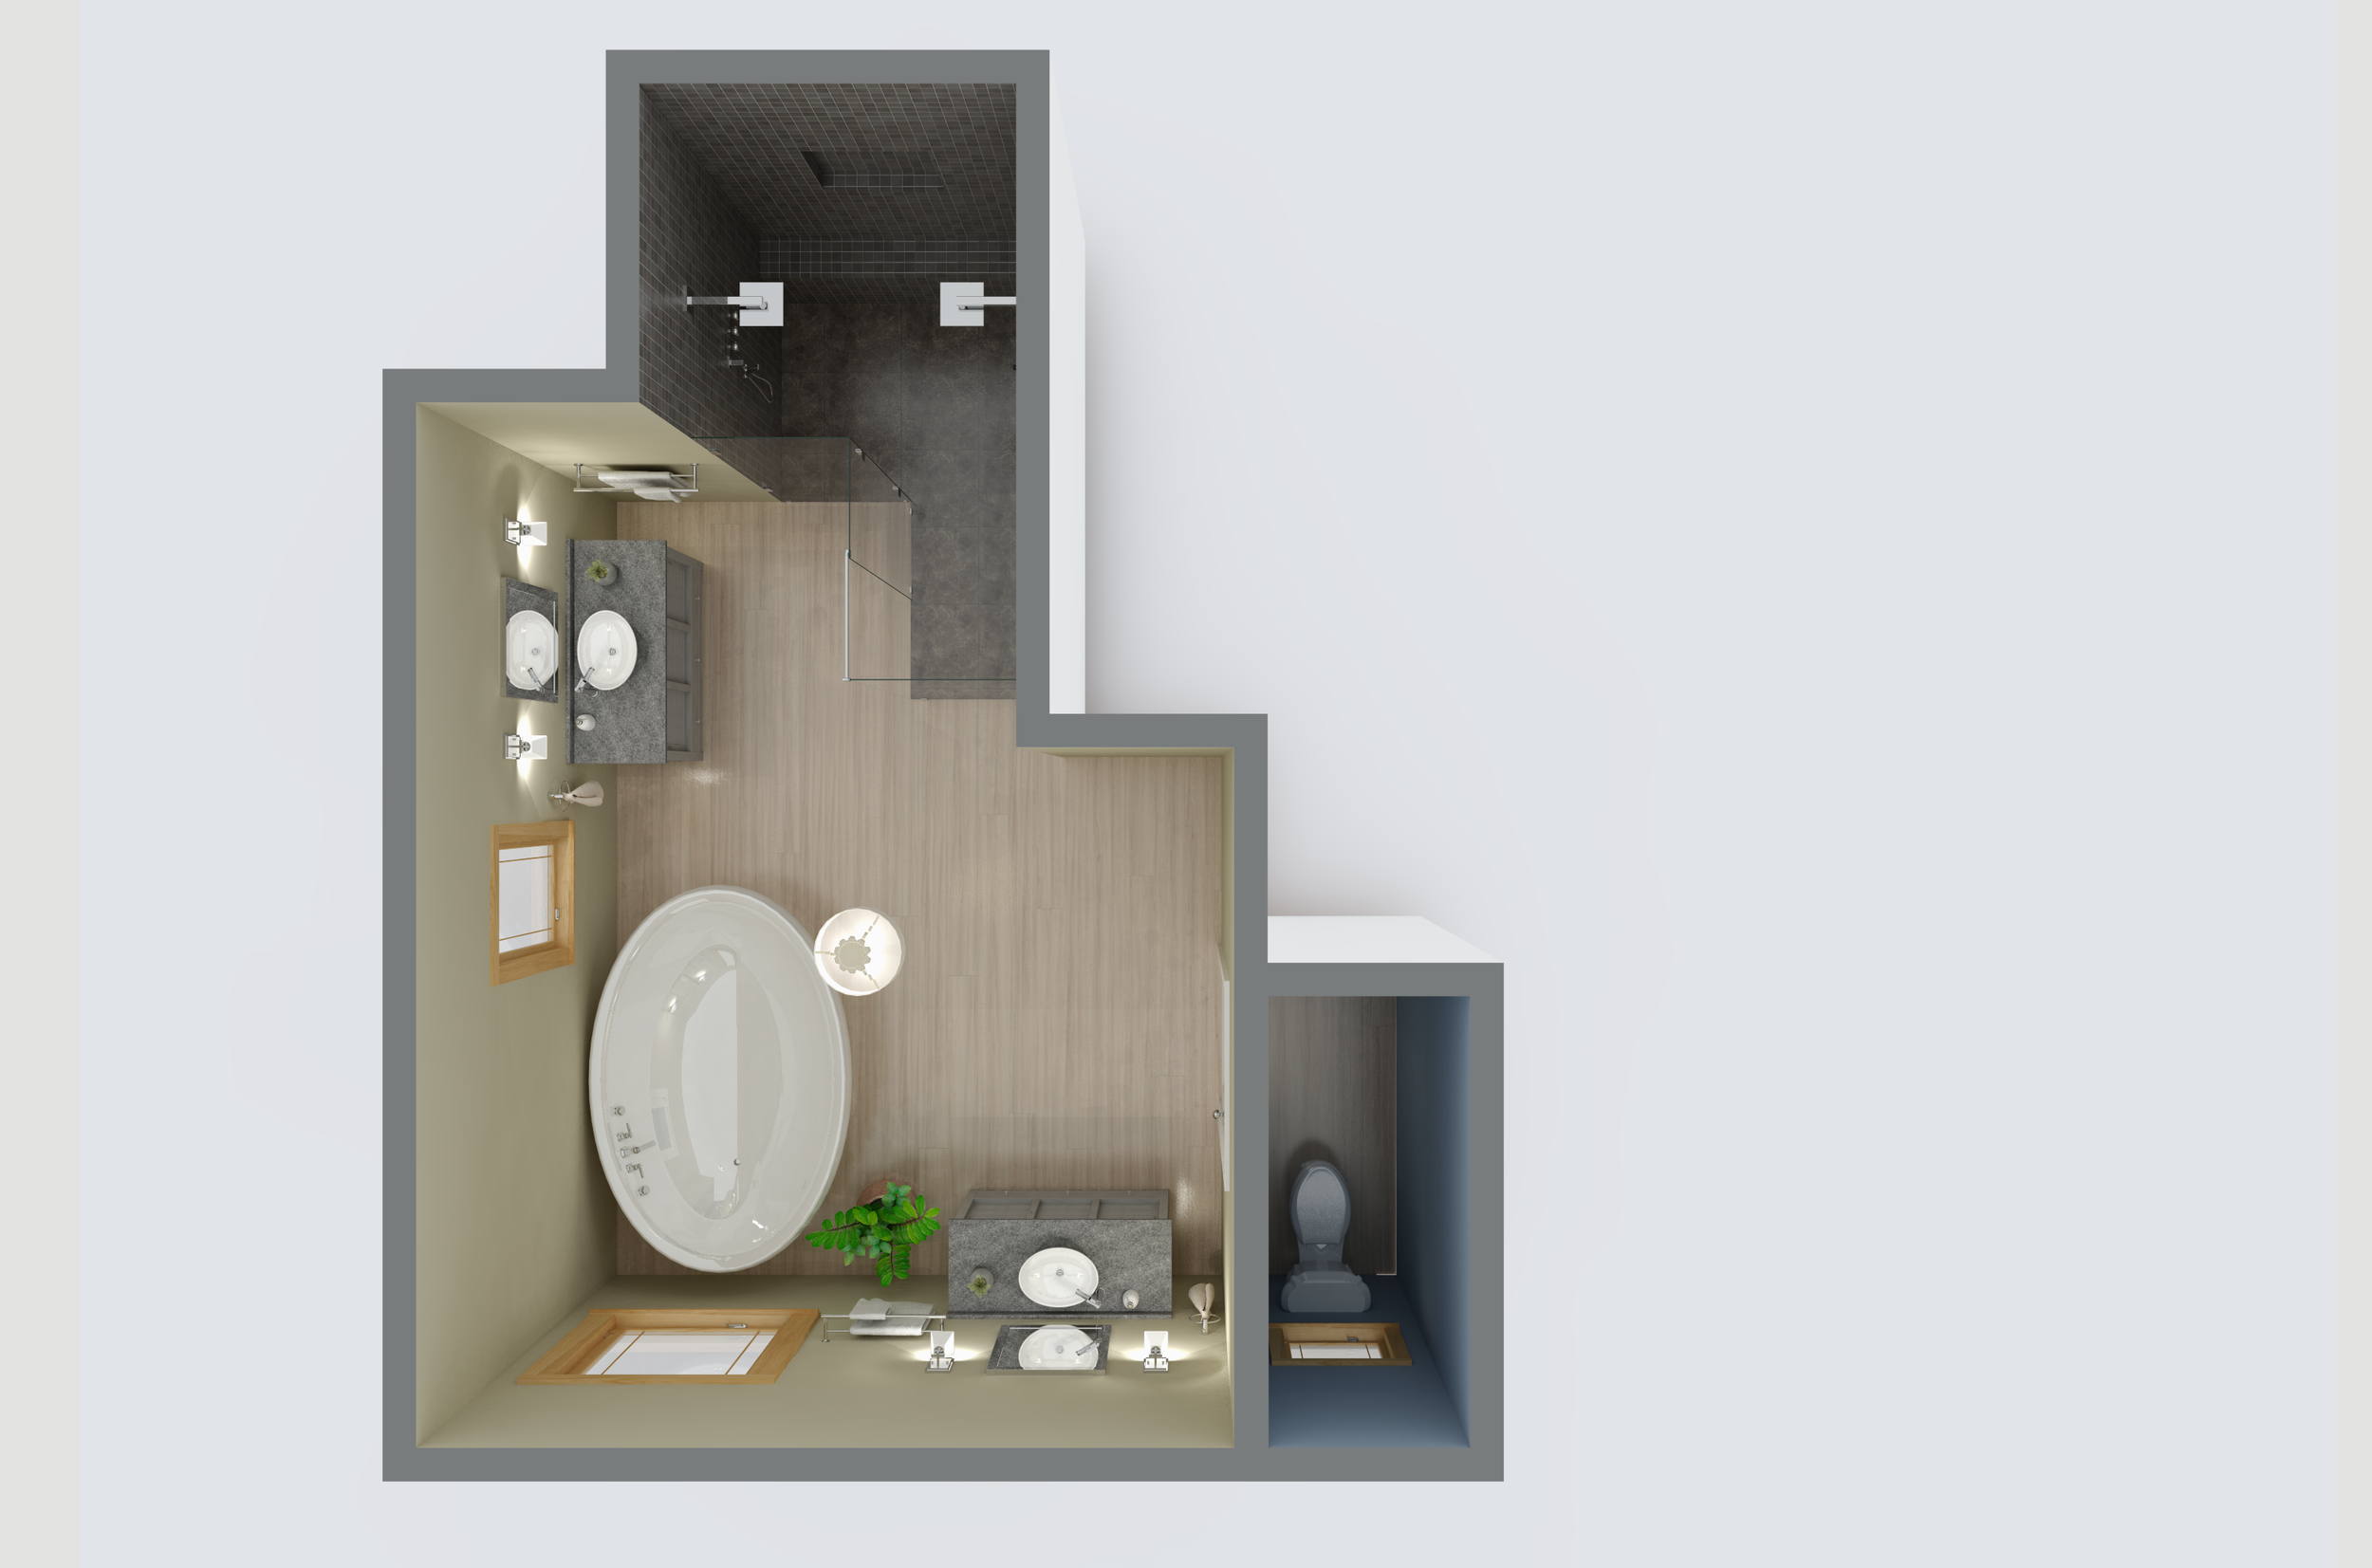 Sample bathroom design 2020-03-22 22221900000.png